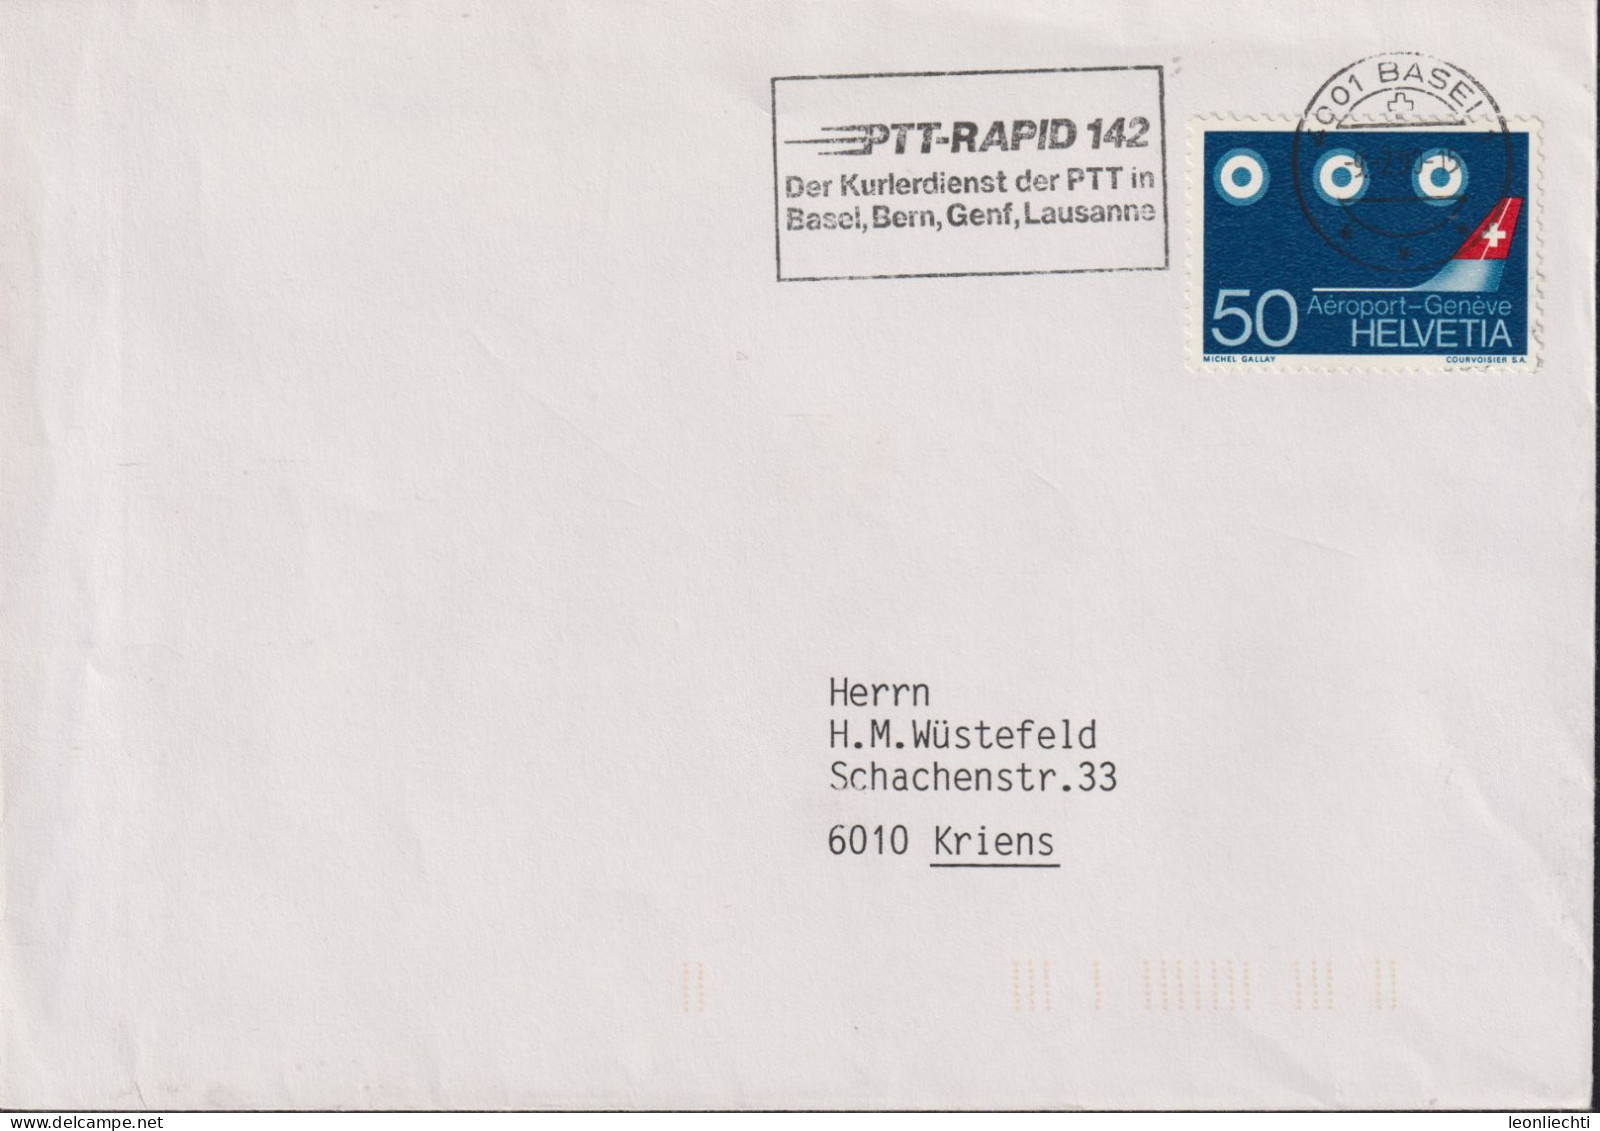 1968/90 Schweiz Brief, Zum: 455, Mi: 873, ⵙ BASEL U. Flagge: PTT-RAPID 142 Der Kurierdienst Der PTT - First Flight Covers